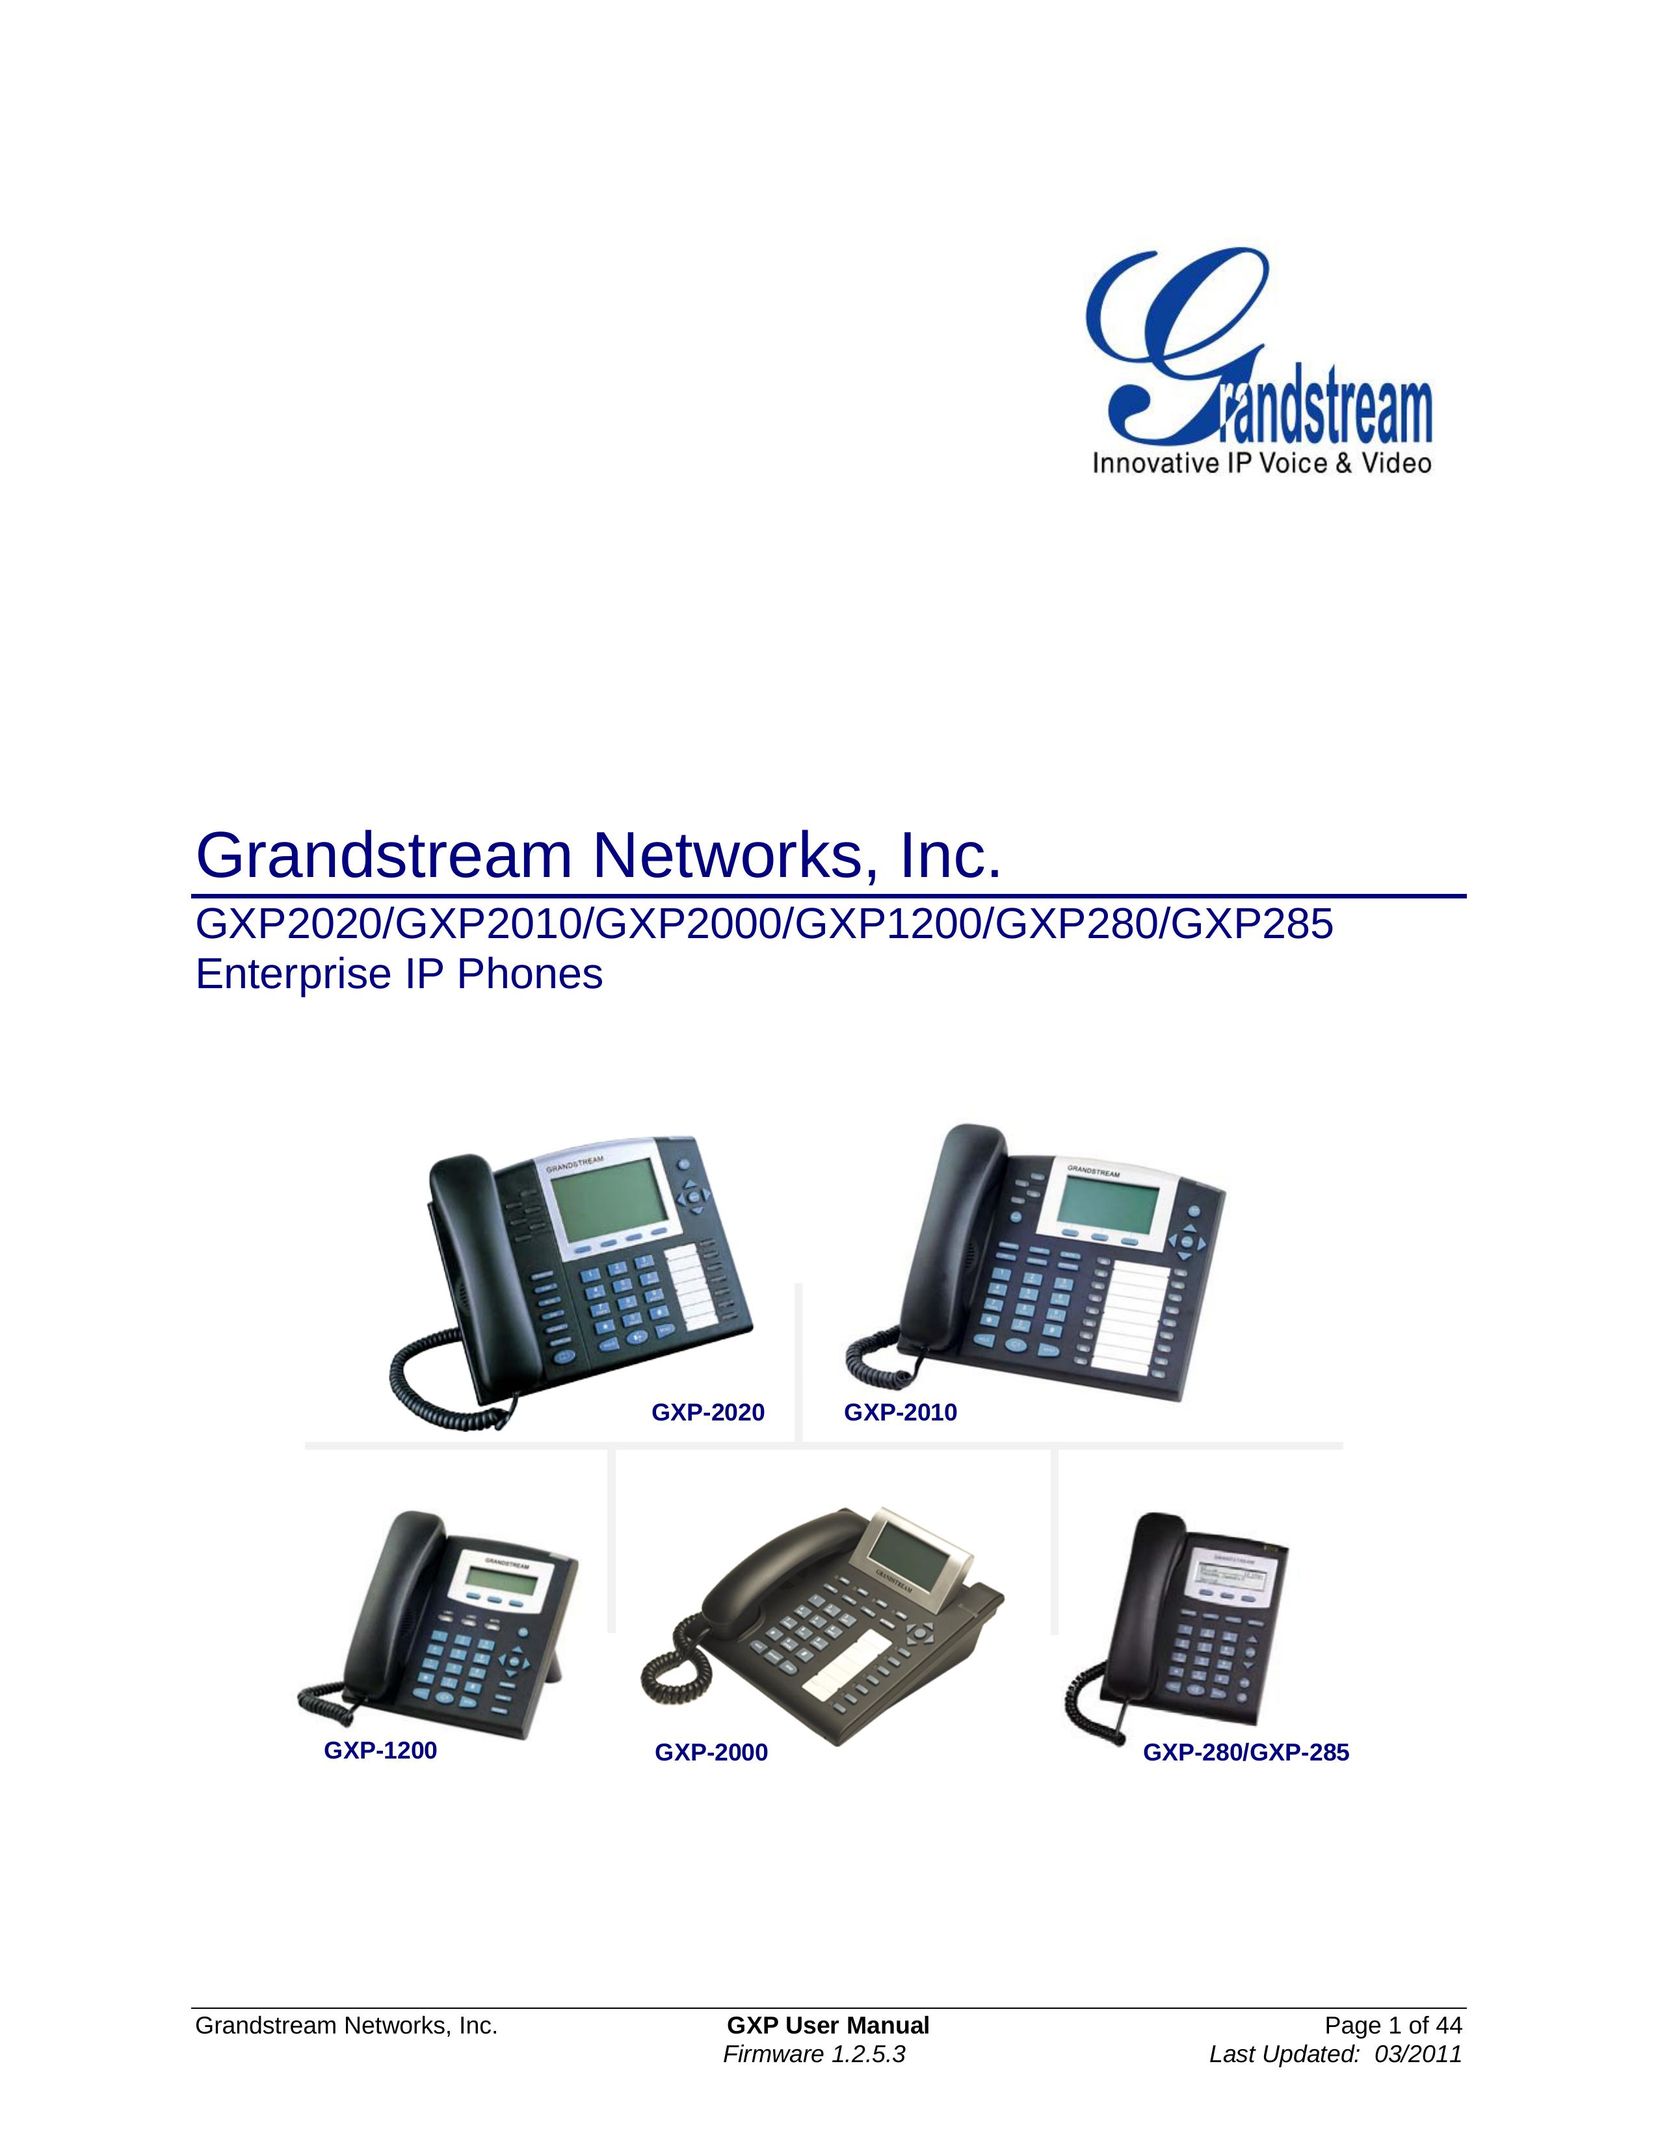 Grandstream Networks GXP2000 IP Phone User Manual